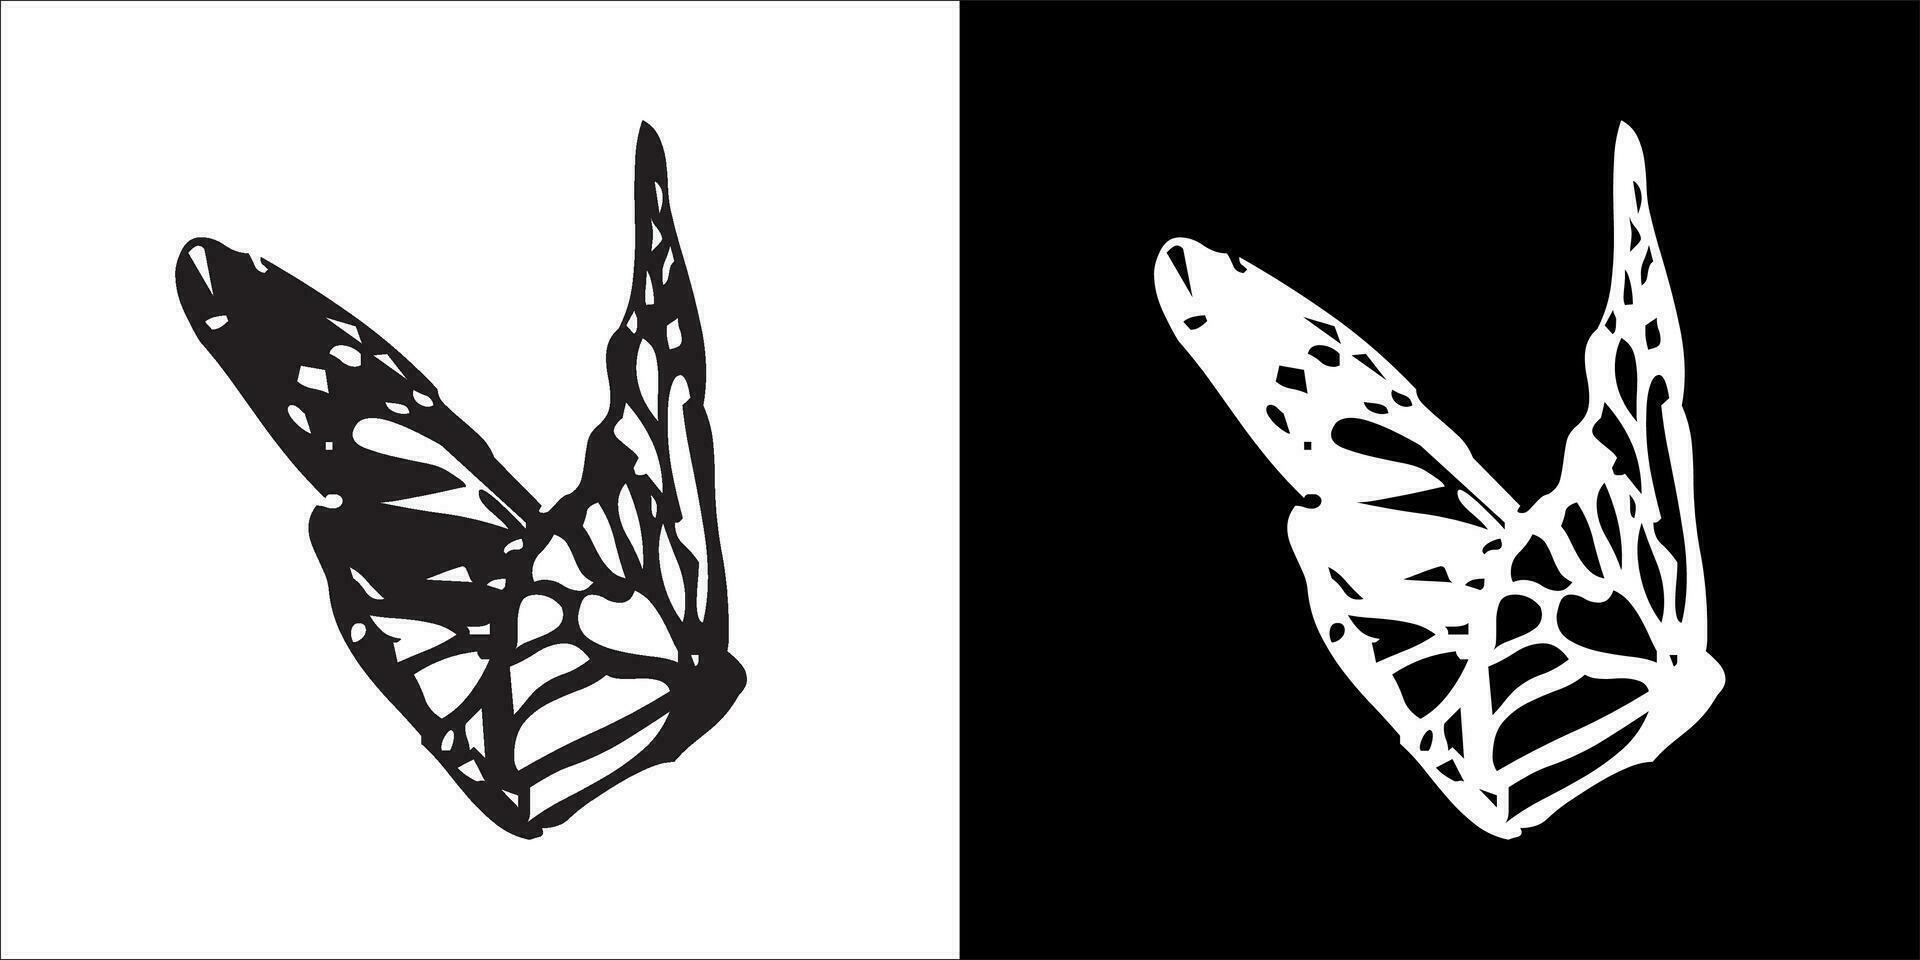 illustration, vektor grafisk av fjäril ikon, i svart och vit, med transparent bakgrund